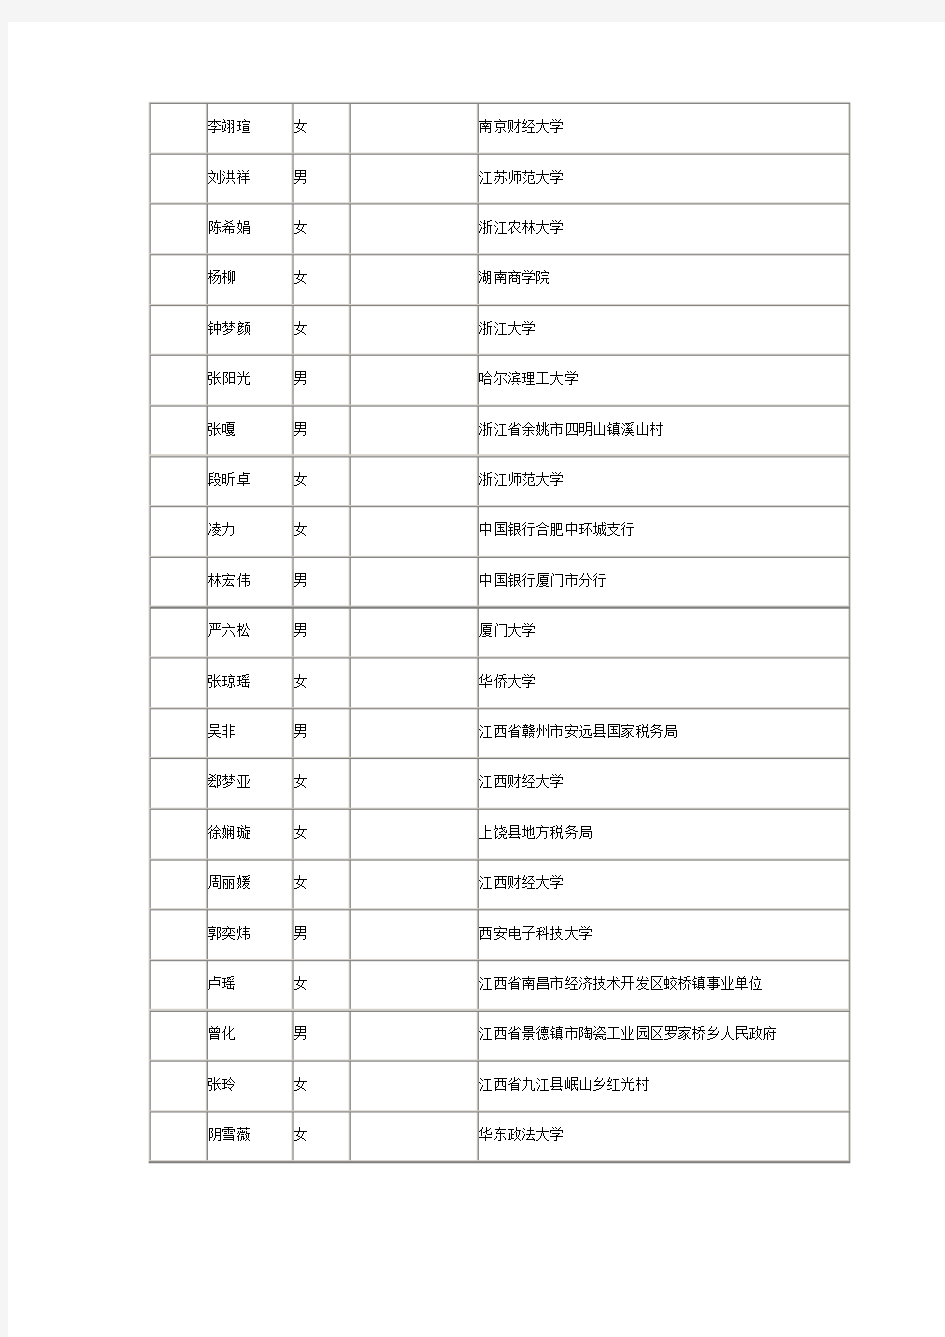 2014国家公务员考试深圳市国家税务局系统拟录用公务员公示